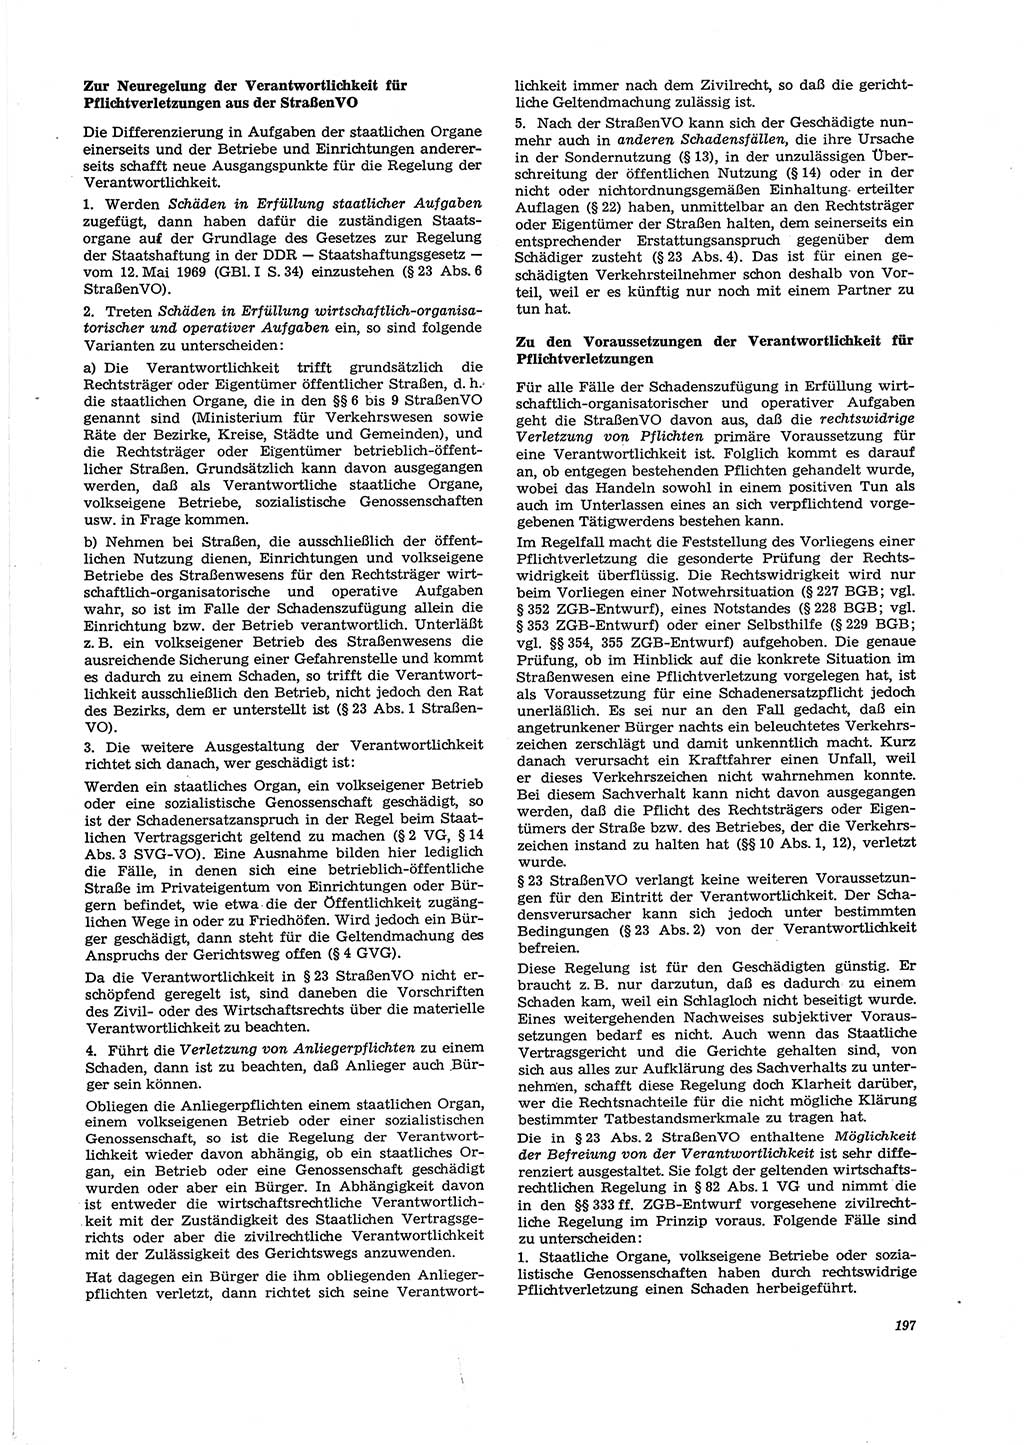 Neue Justiz (NJ), Zeitschrift für Recht und Rechtswissenschaft [Deutsche Demokratische Republik (DDR)], 29. Jahrgang 1975, Seite 197 (NJ DDR 1975, S. 197)